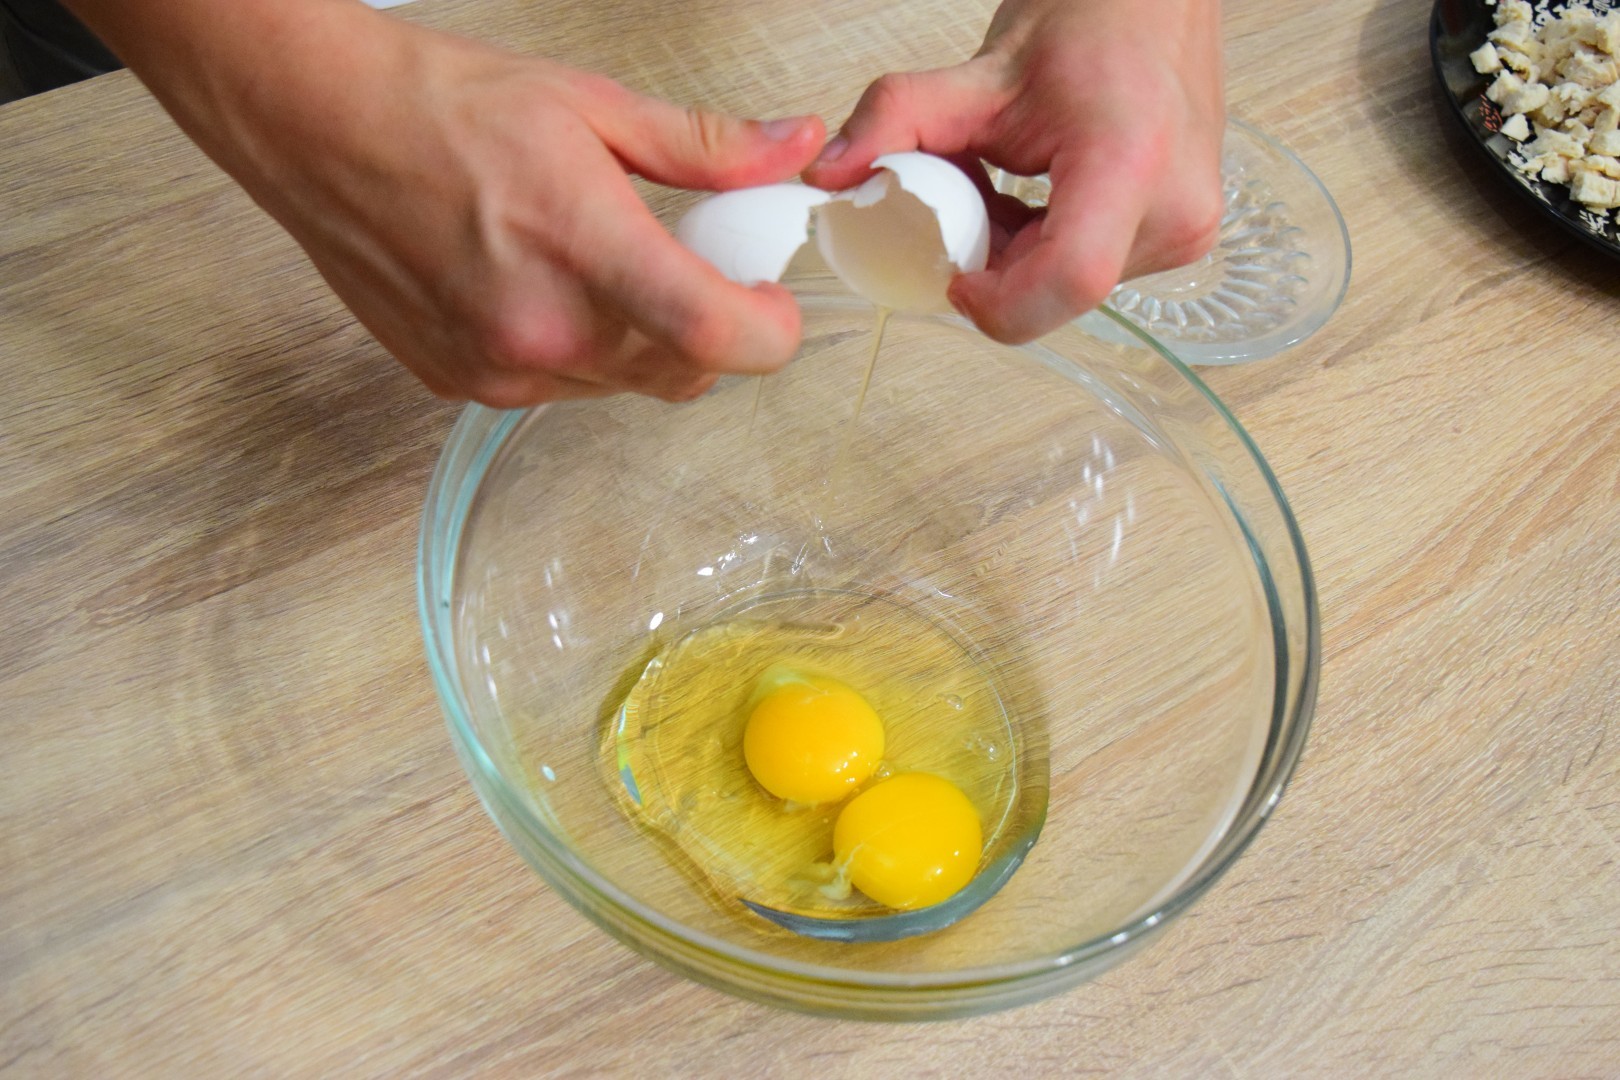 Разбитые яйца 2. Разбить яйца в миску. Разбейте яйца в миску. Яйца разбитые в миске. Разбитые 2 яйца.